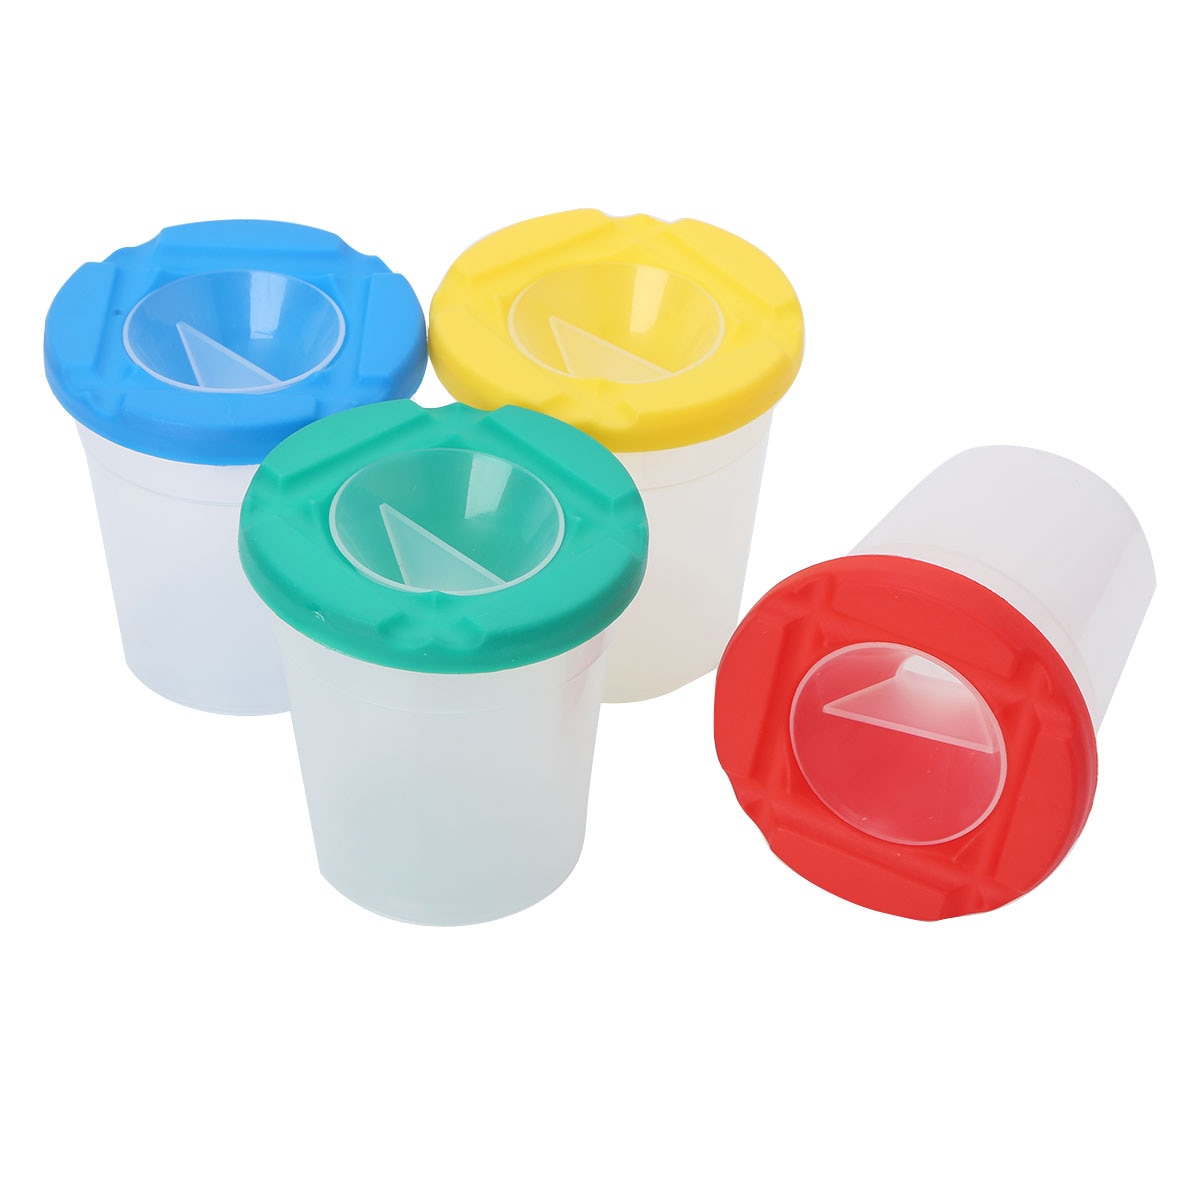 4 Stuks Diverse Kleur Morsbestendig No-Spill Verf Cups Containers Met Deksels En Stoppers Schilderen Supply Voor Kids